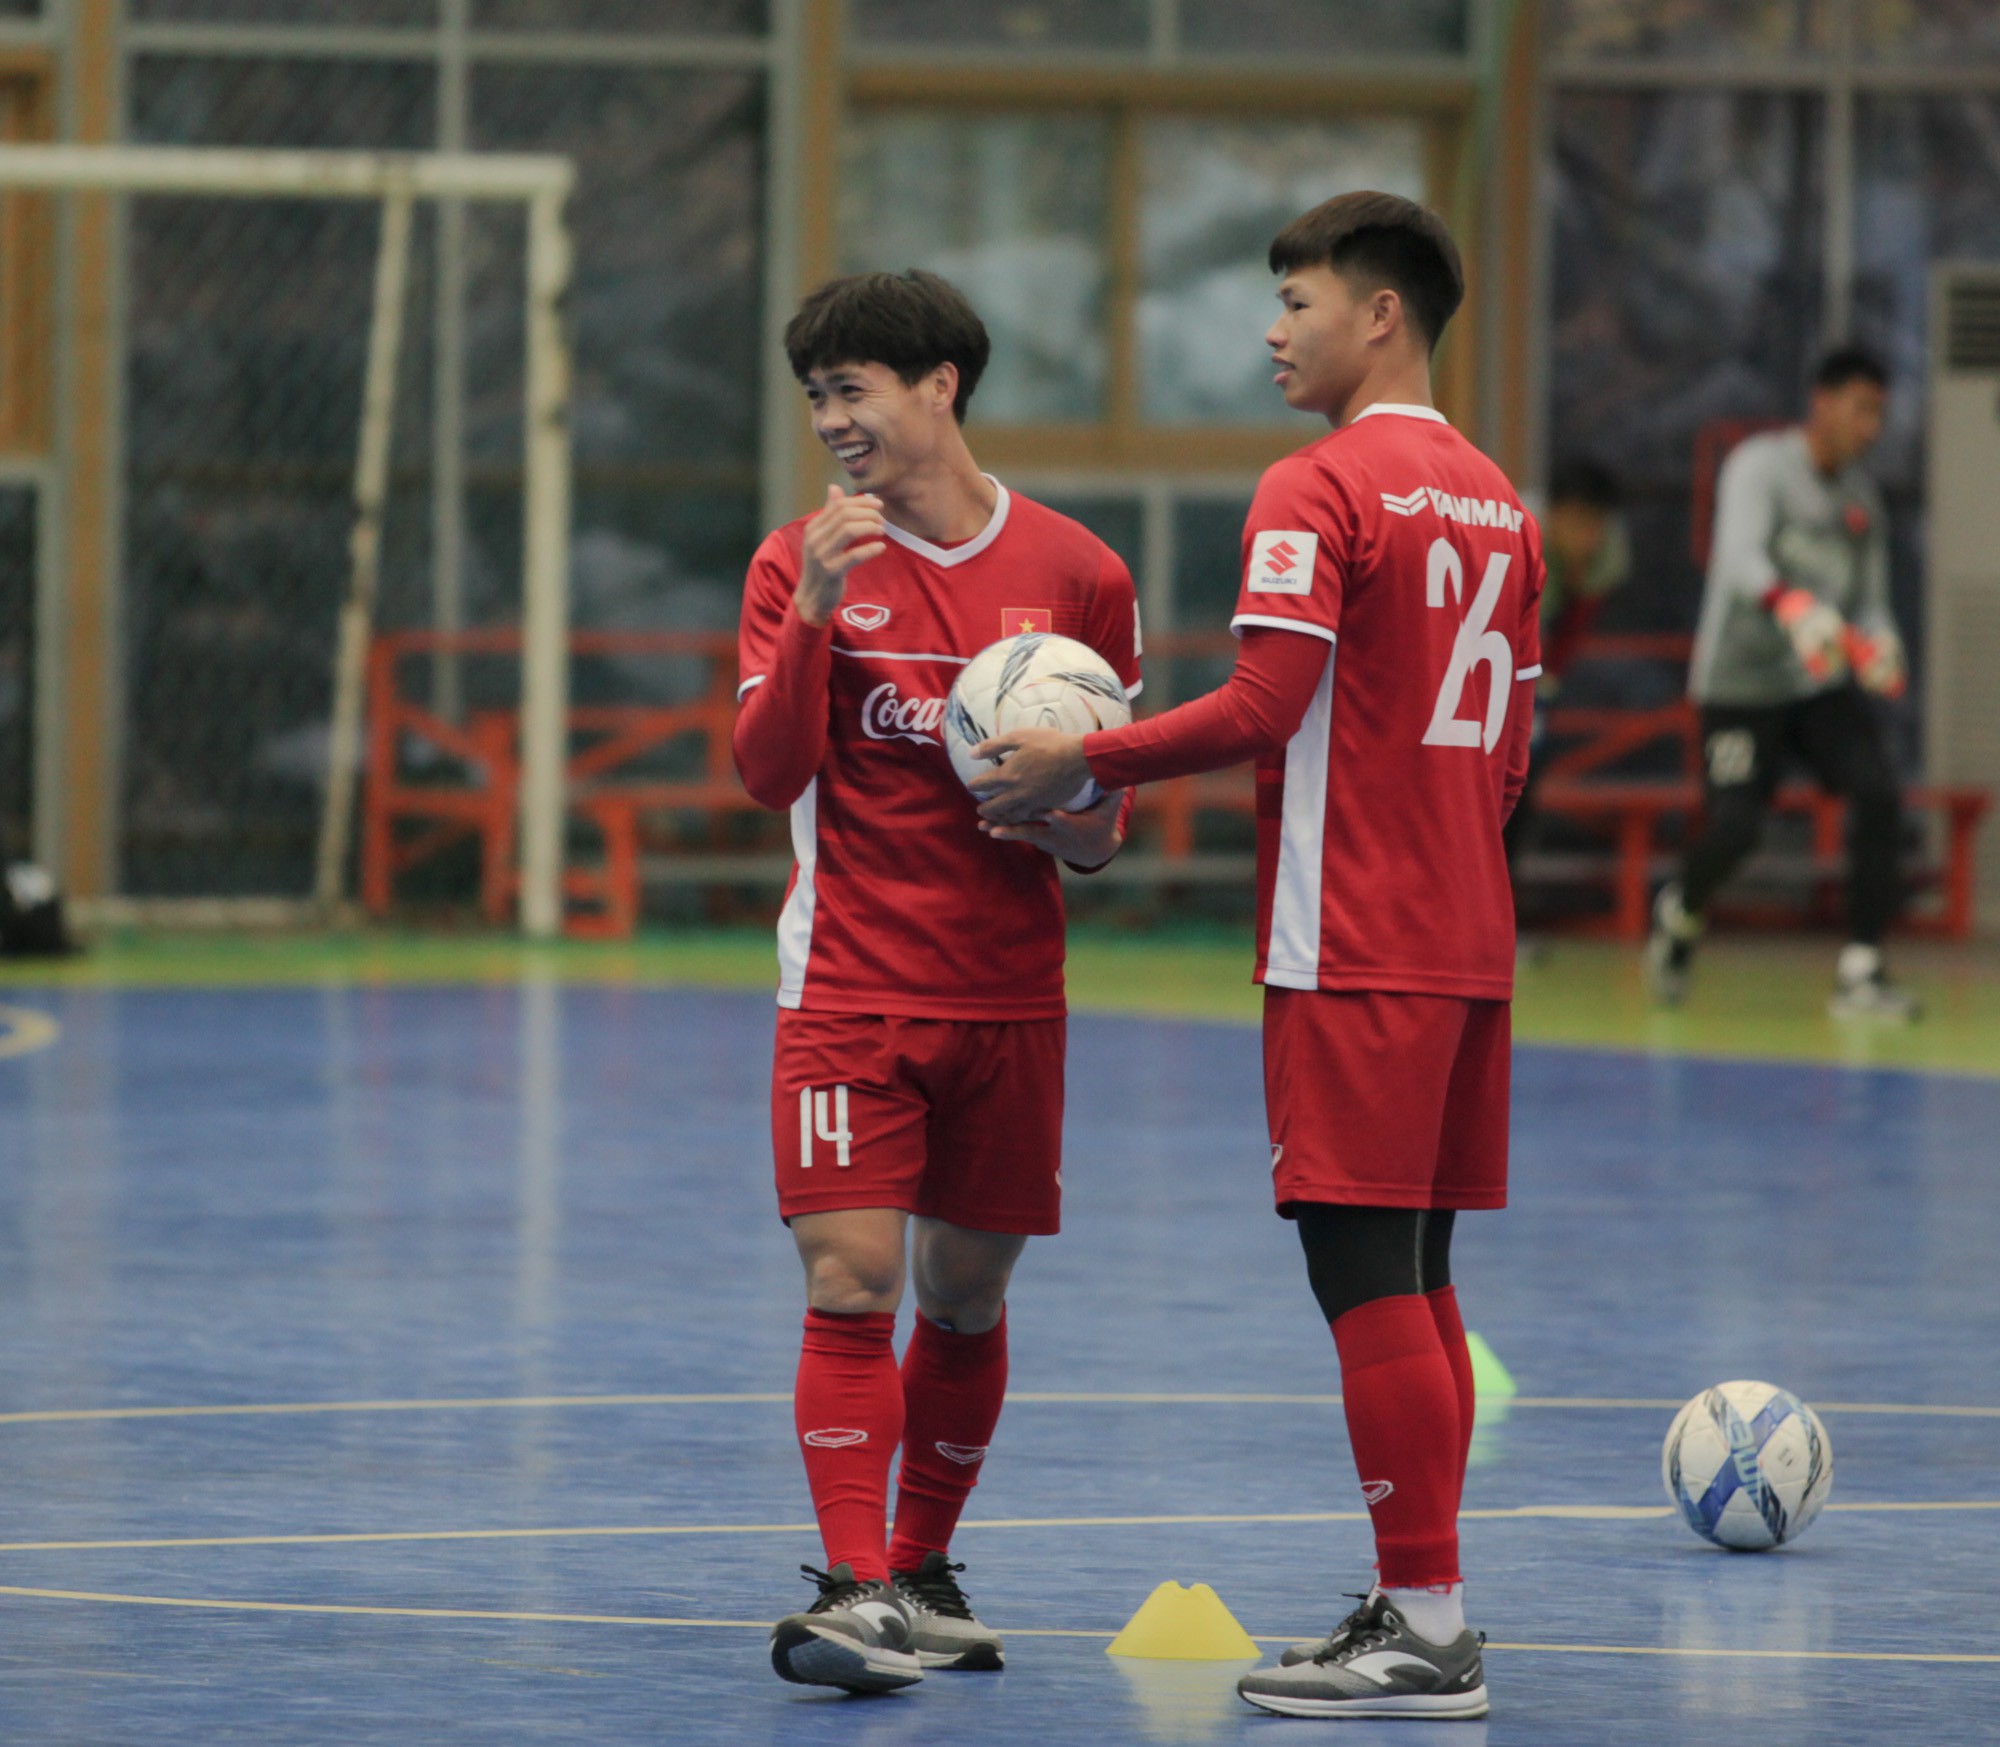 ĐT Việt Nam 0–2 Seoul E-land: Thất bại thứ 2 tại Hàn Quốc - Ảnh 13.